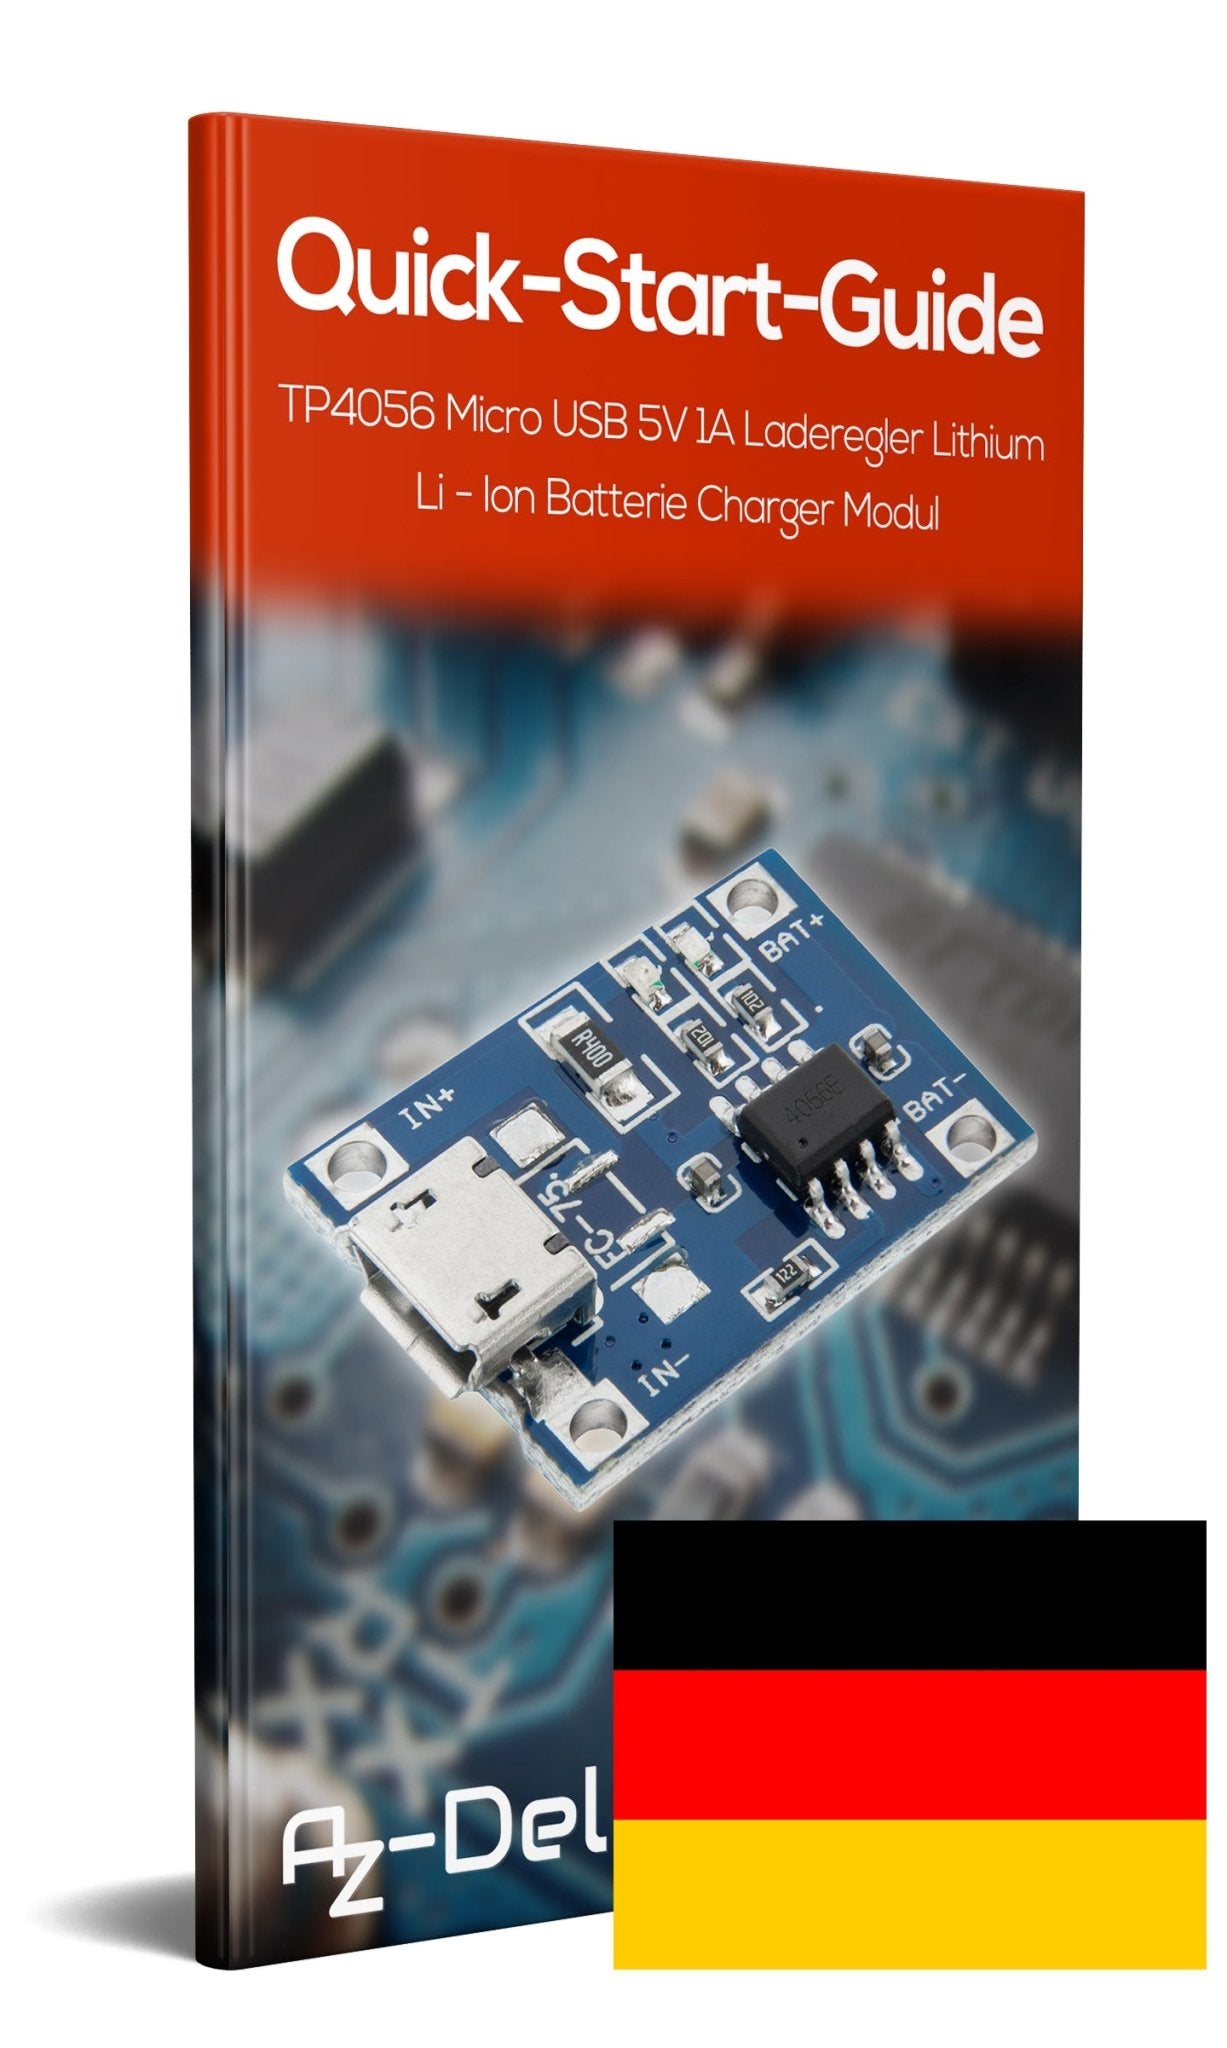 Module Chargeur 5V 1A pour batterie lithium TP4056 Simple sortie Mini USB